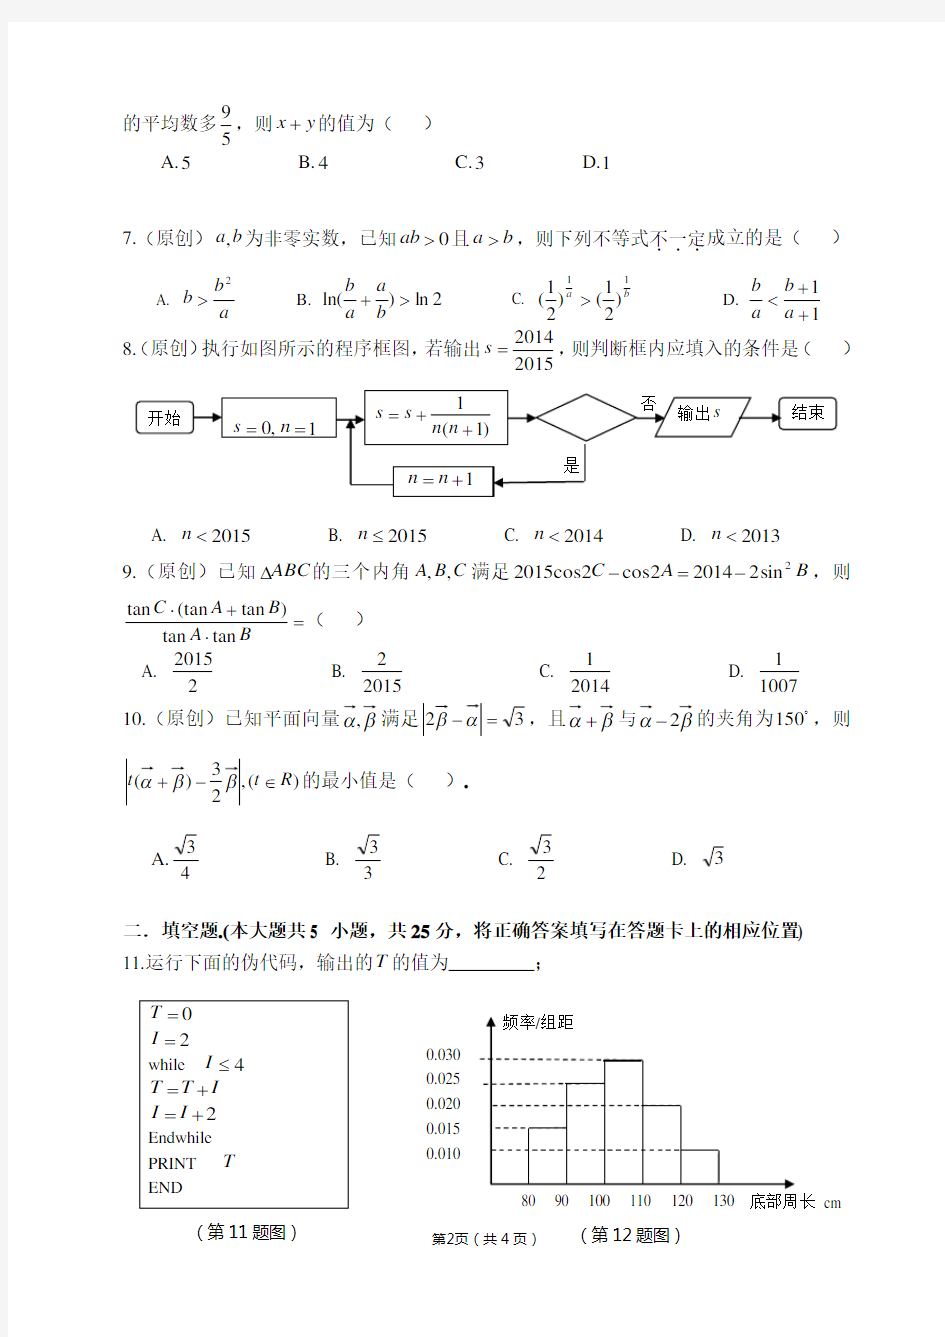 重庆一中高2017级高一下期半期考试数学试题(含答案,多为原创题)